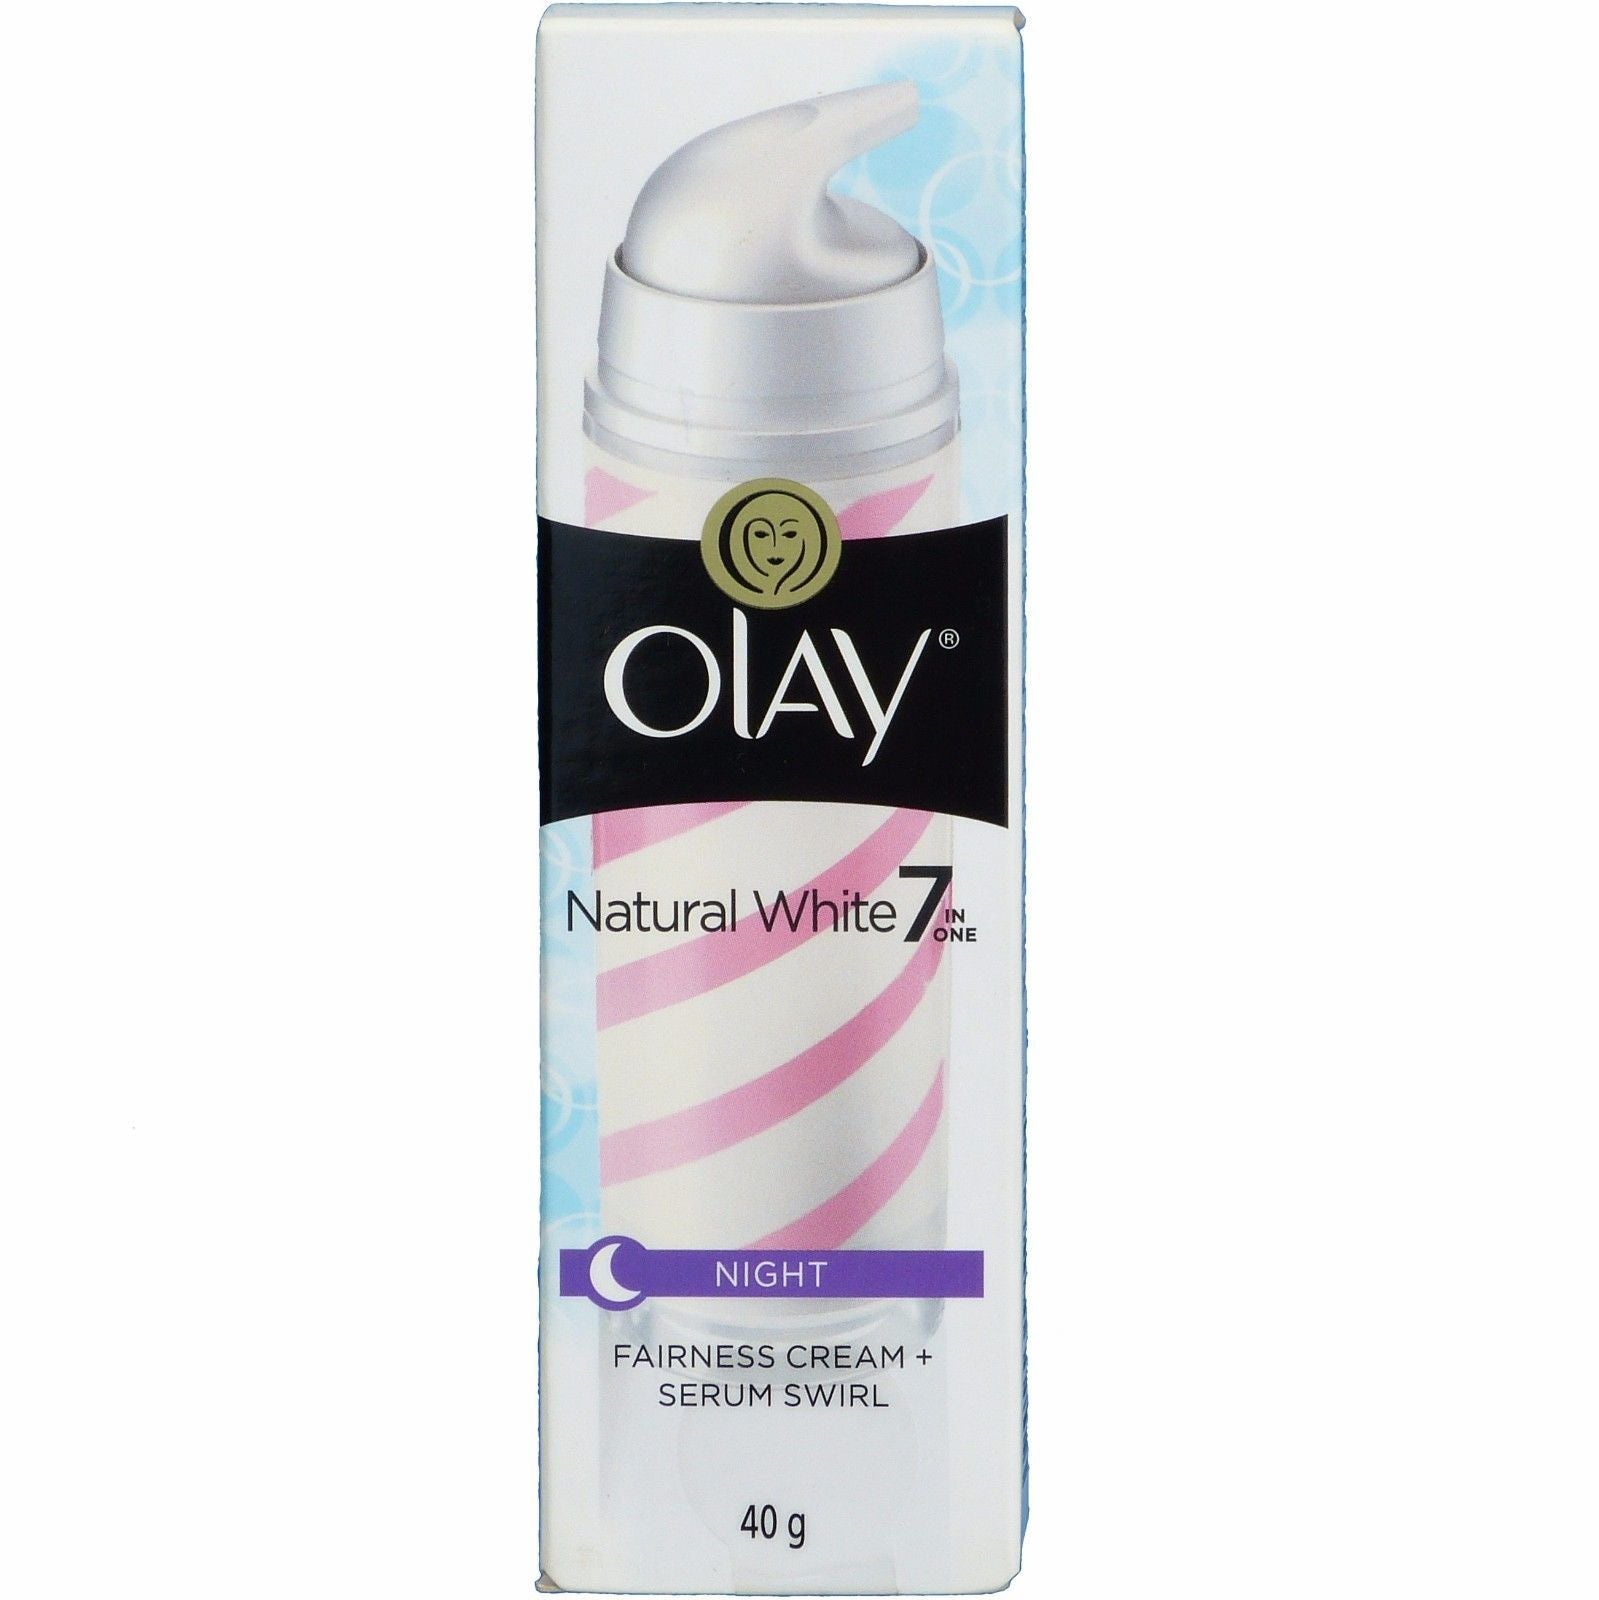 Olay Natural White Fairness NIGHT Cream Serum Swirl Skin Whitening 40 grams - Asian Beauty Supply